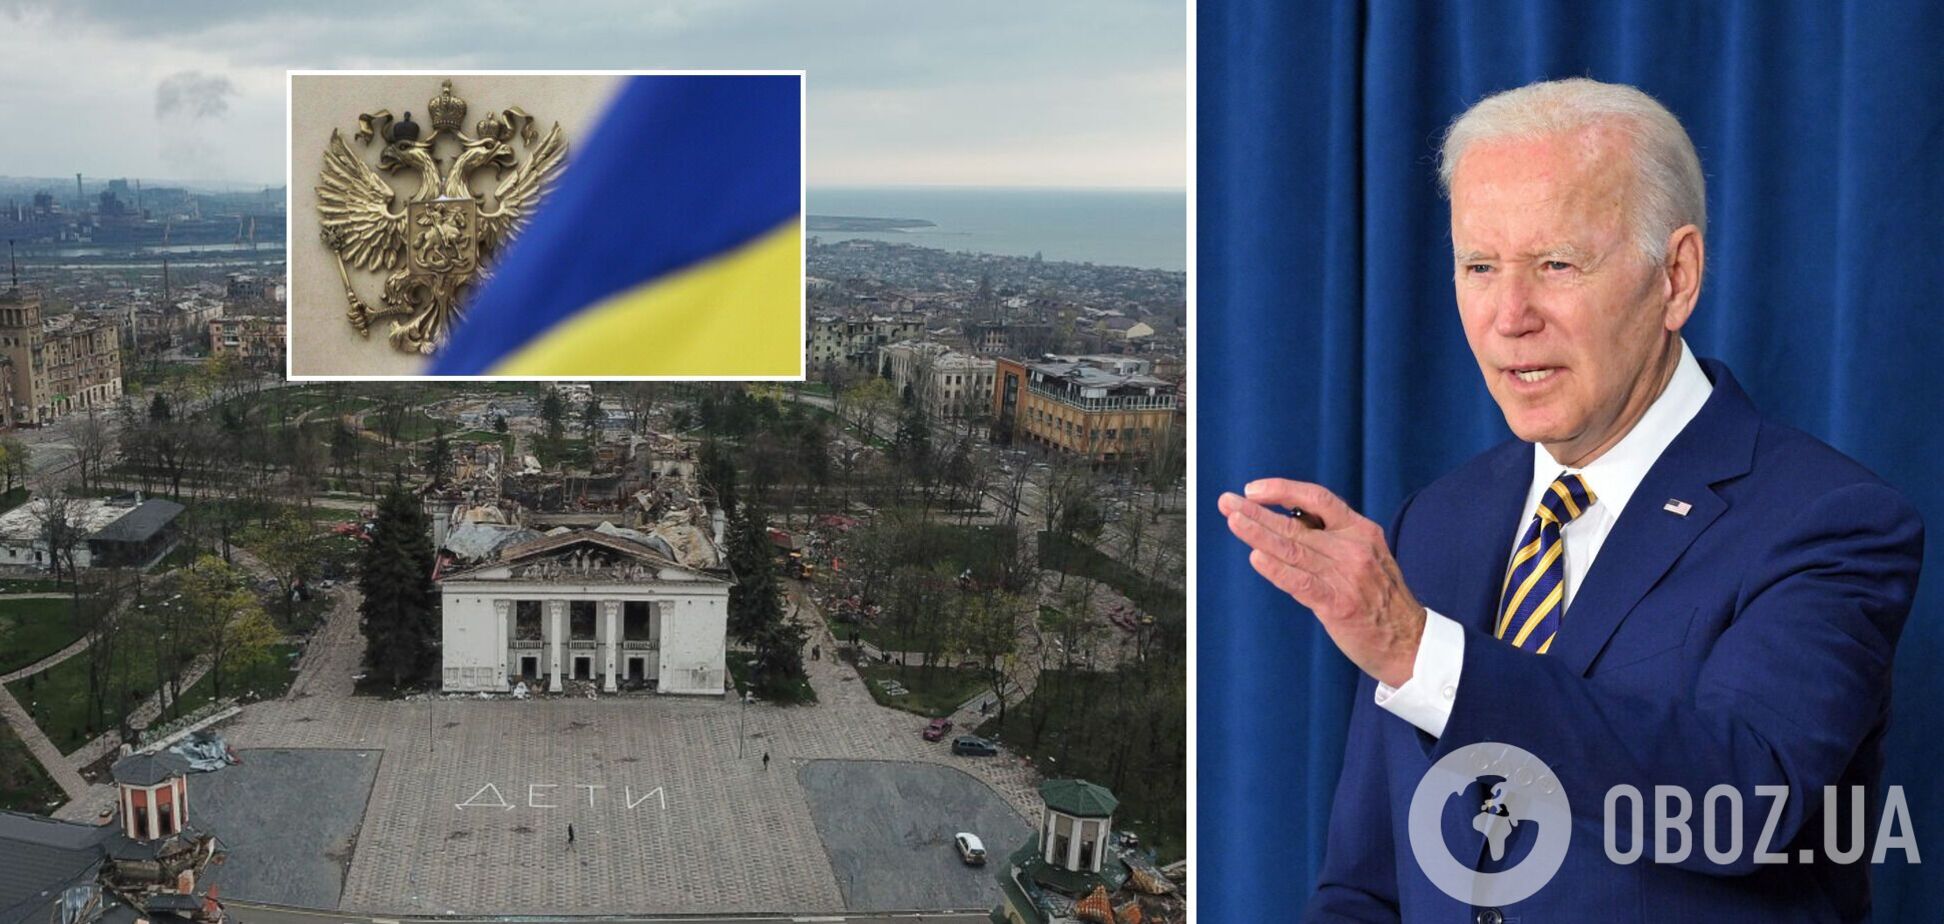 Байден: Путин хочет уничтожить украинскую культуру, мы должны помочь Киеву